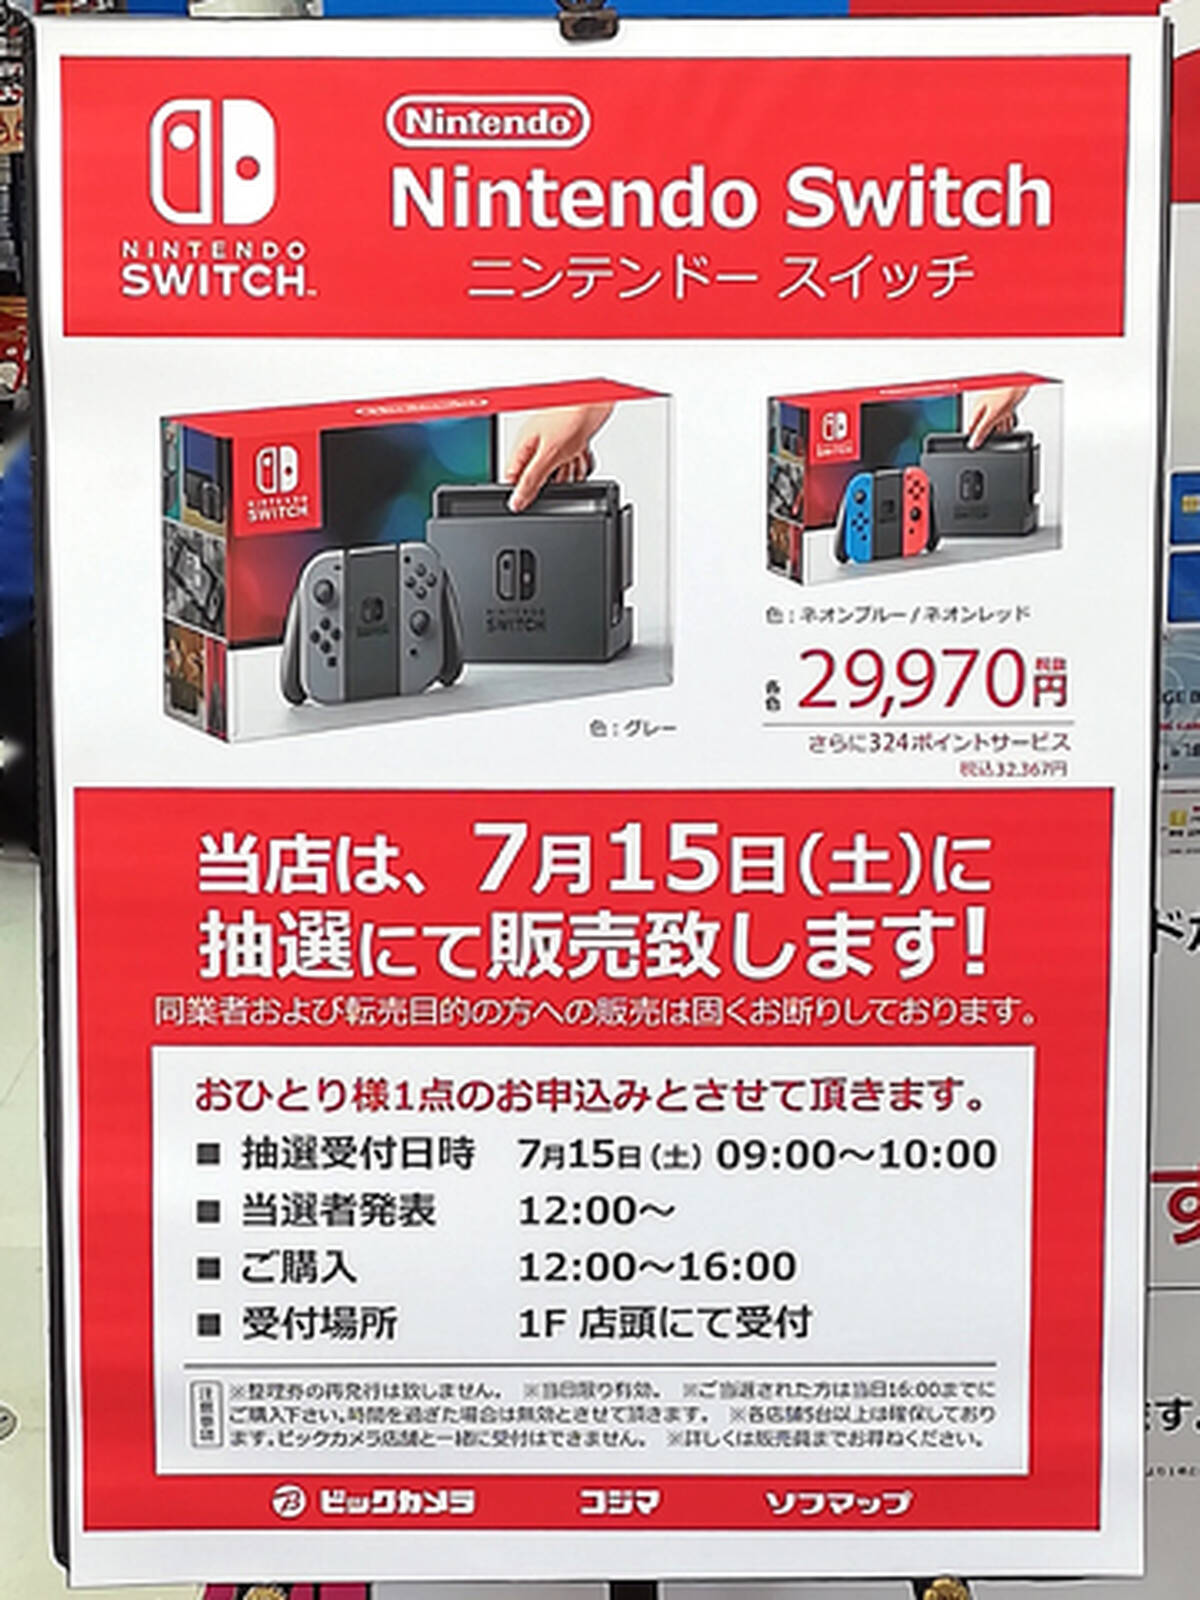 ビックカメラグループで Nintendo Switch の抽選販売を明日7月15日 土 に実施 秋葉原ではビックカメラakiba ソフマップの3店舗が対象 アキバ総研